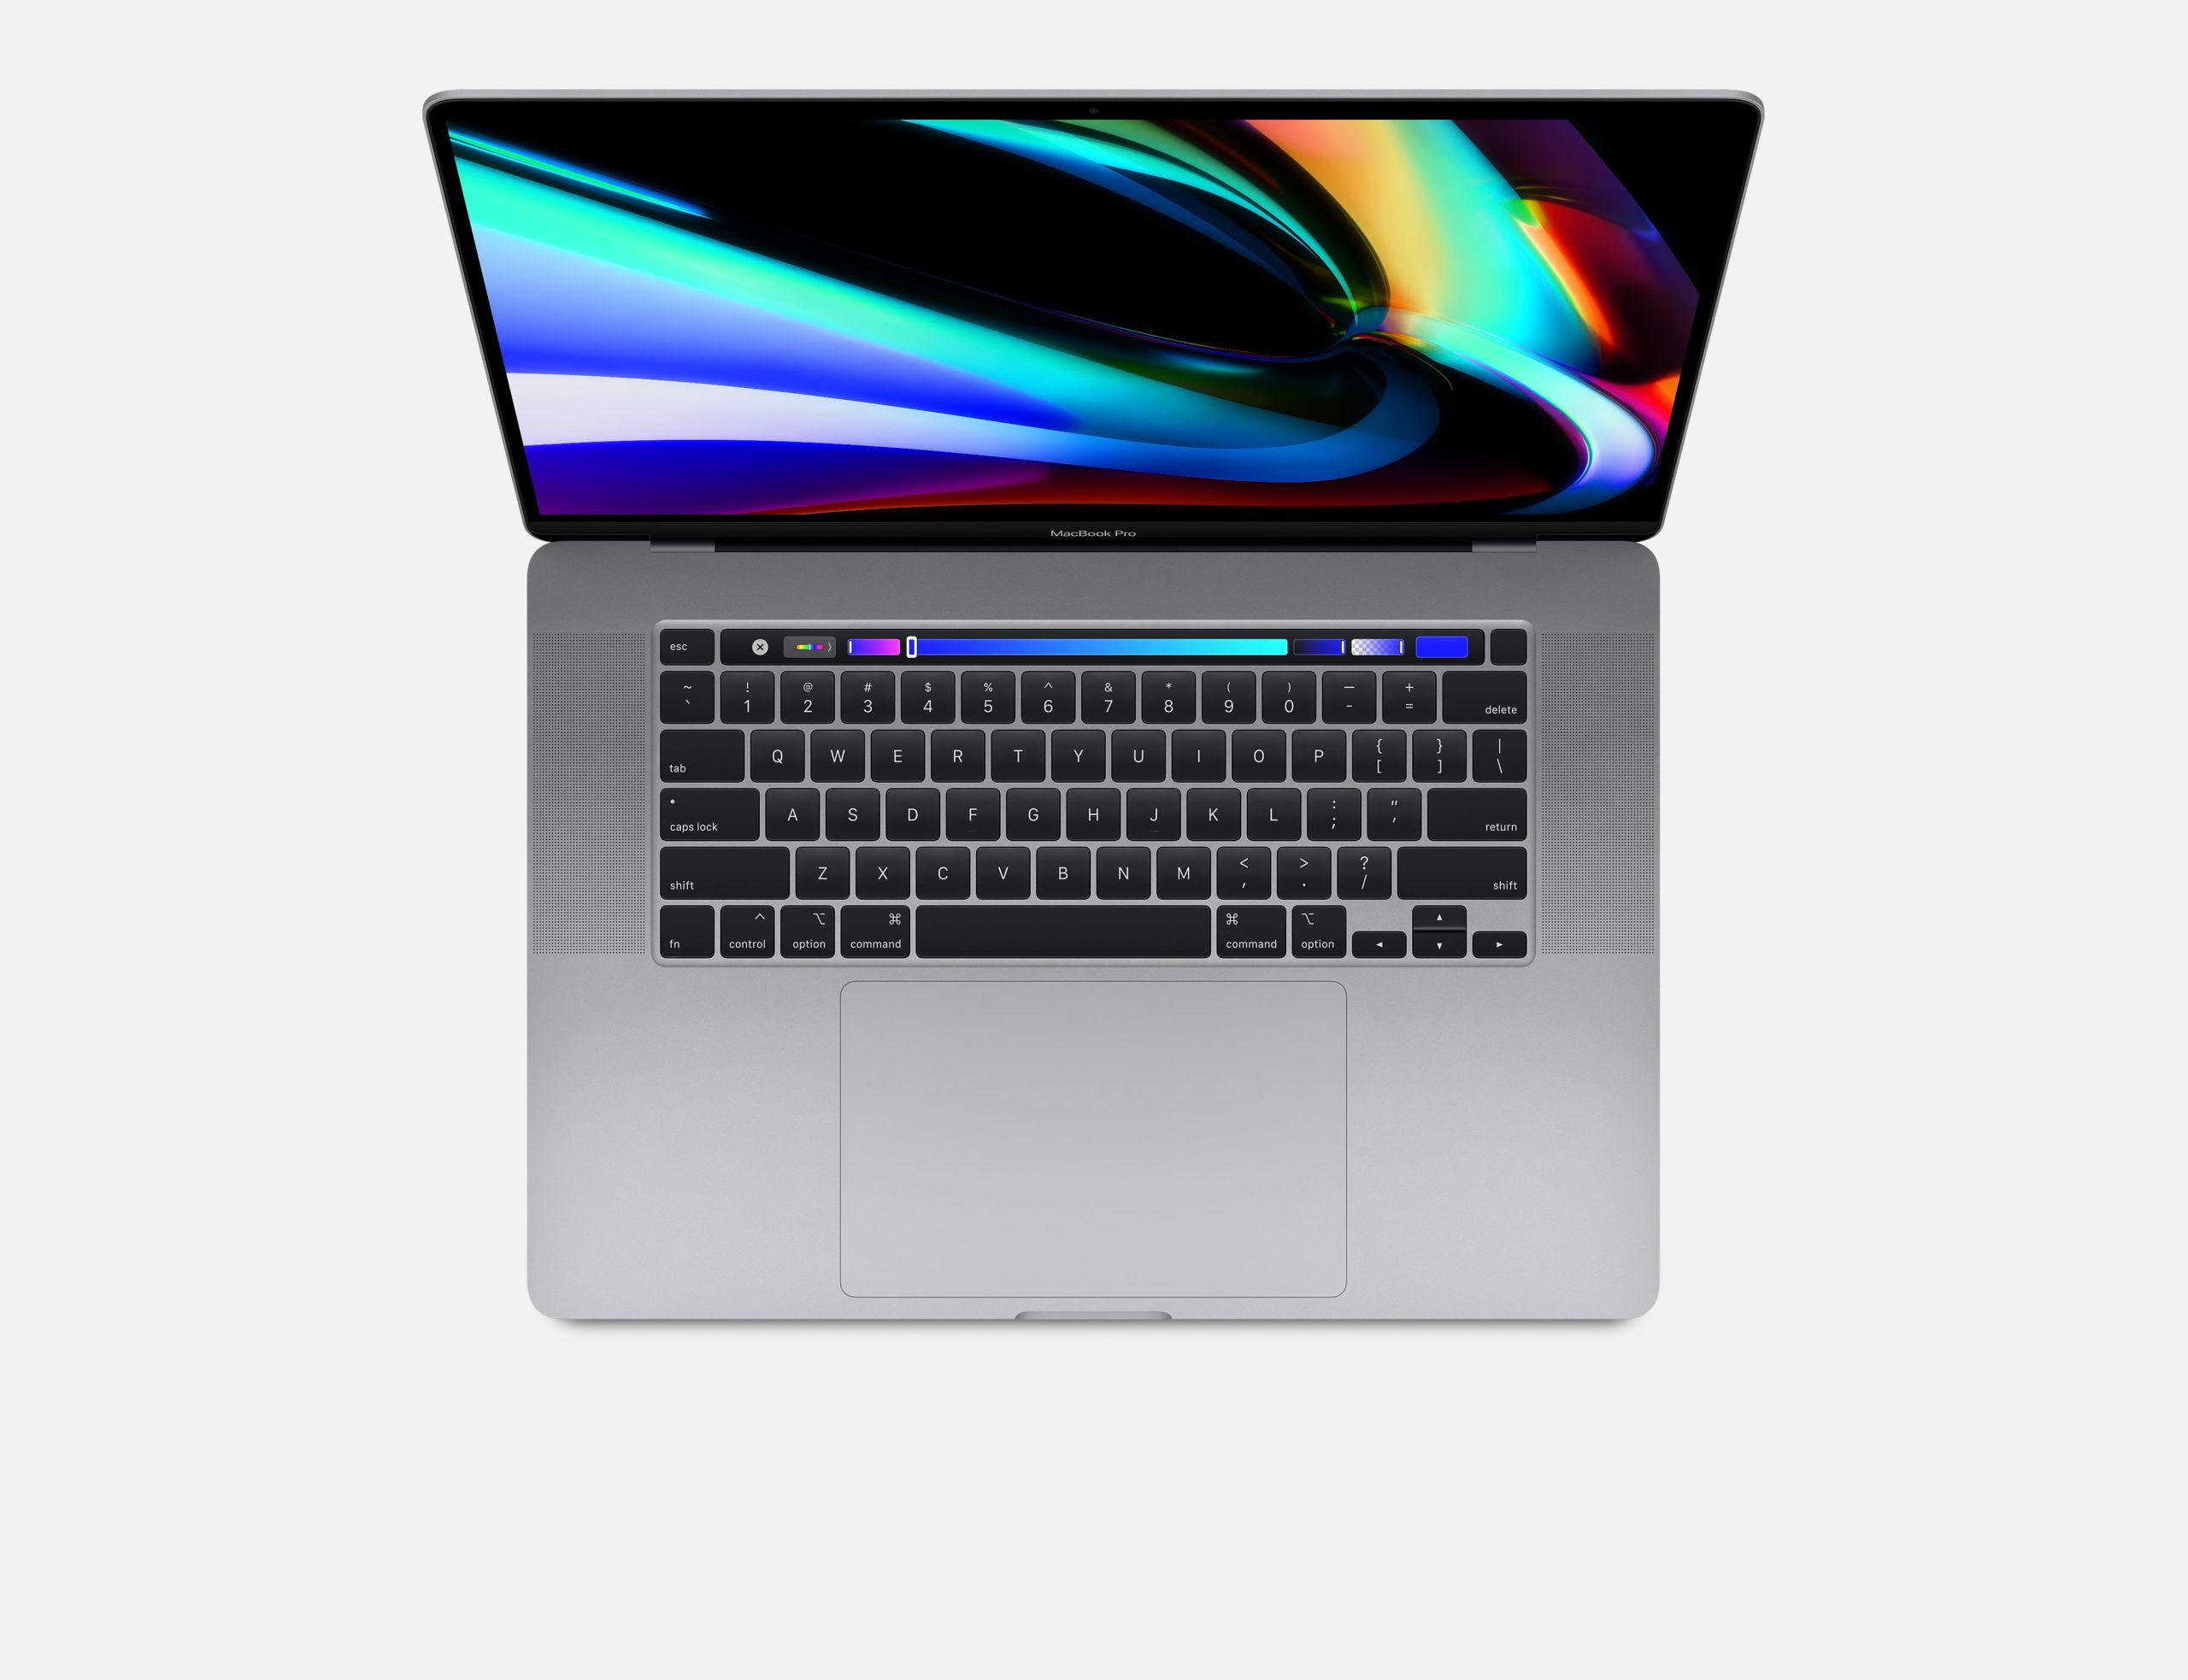 16 inch MacBook Pro